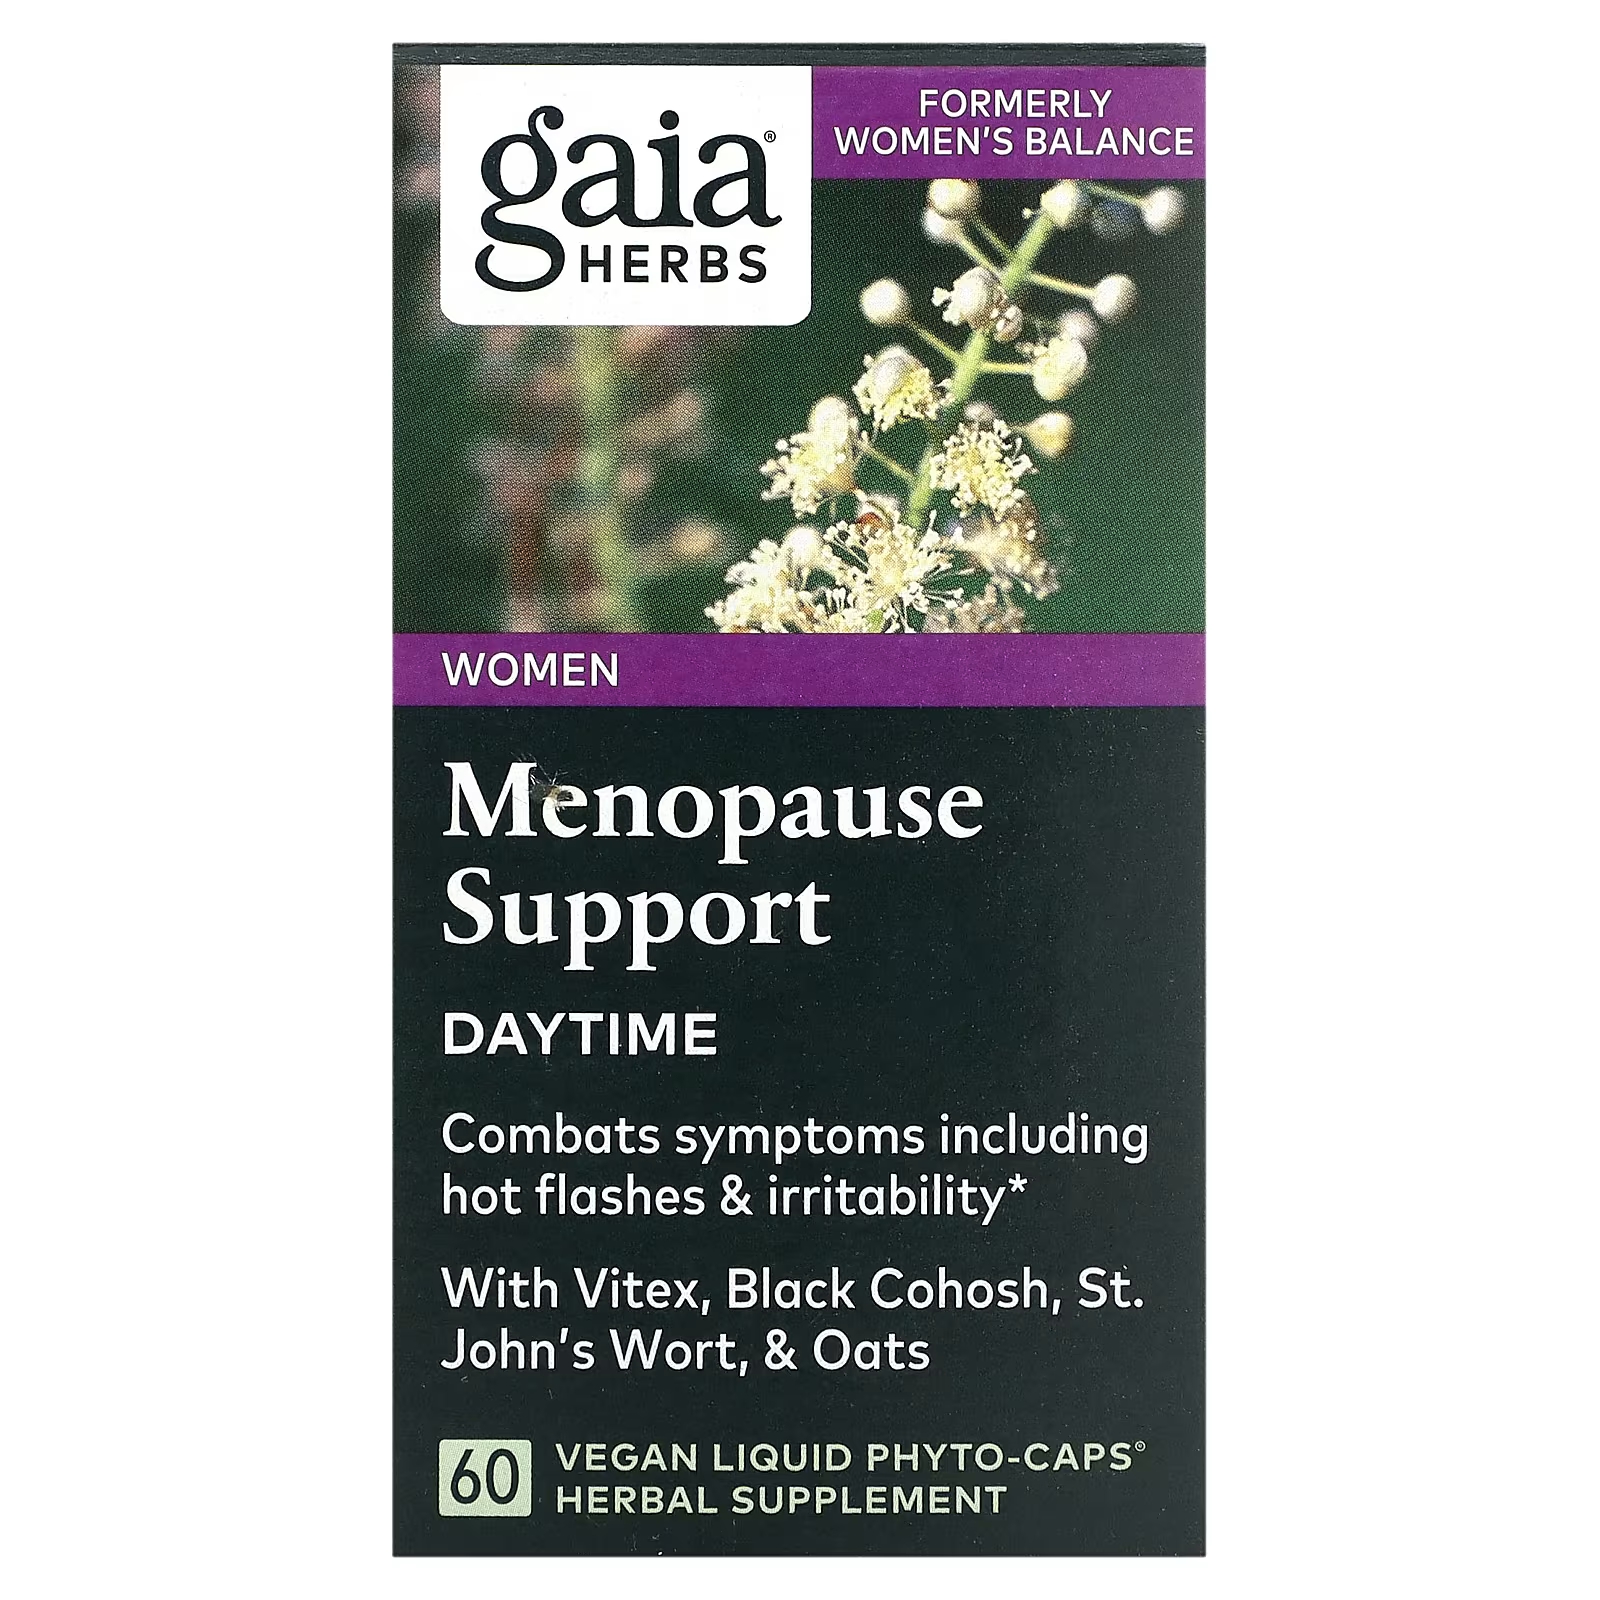 Растительная добавка Gaia Herbs поддержка менопаузы, 60 жидких фитокапсул